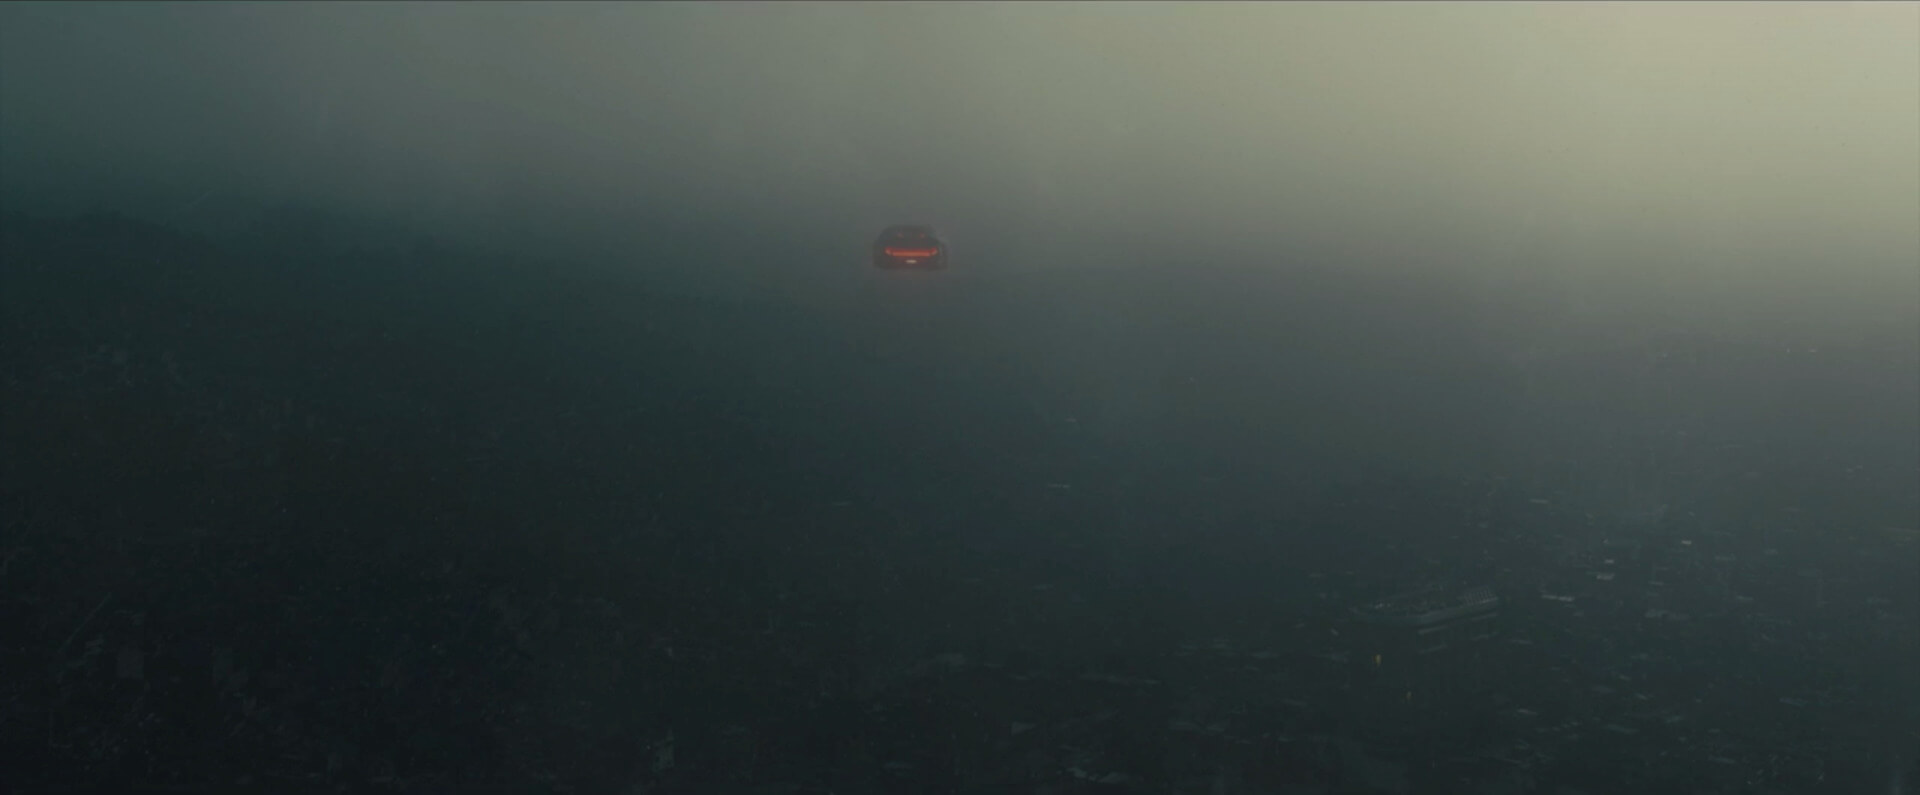 The first shot of LA in Blade Runner · Blade Runner aesthetic